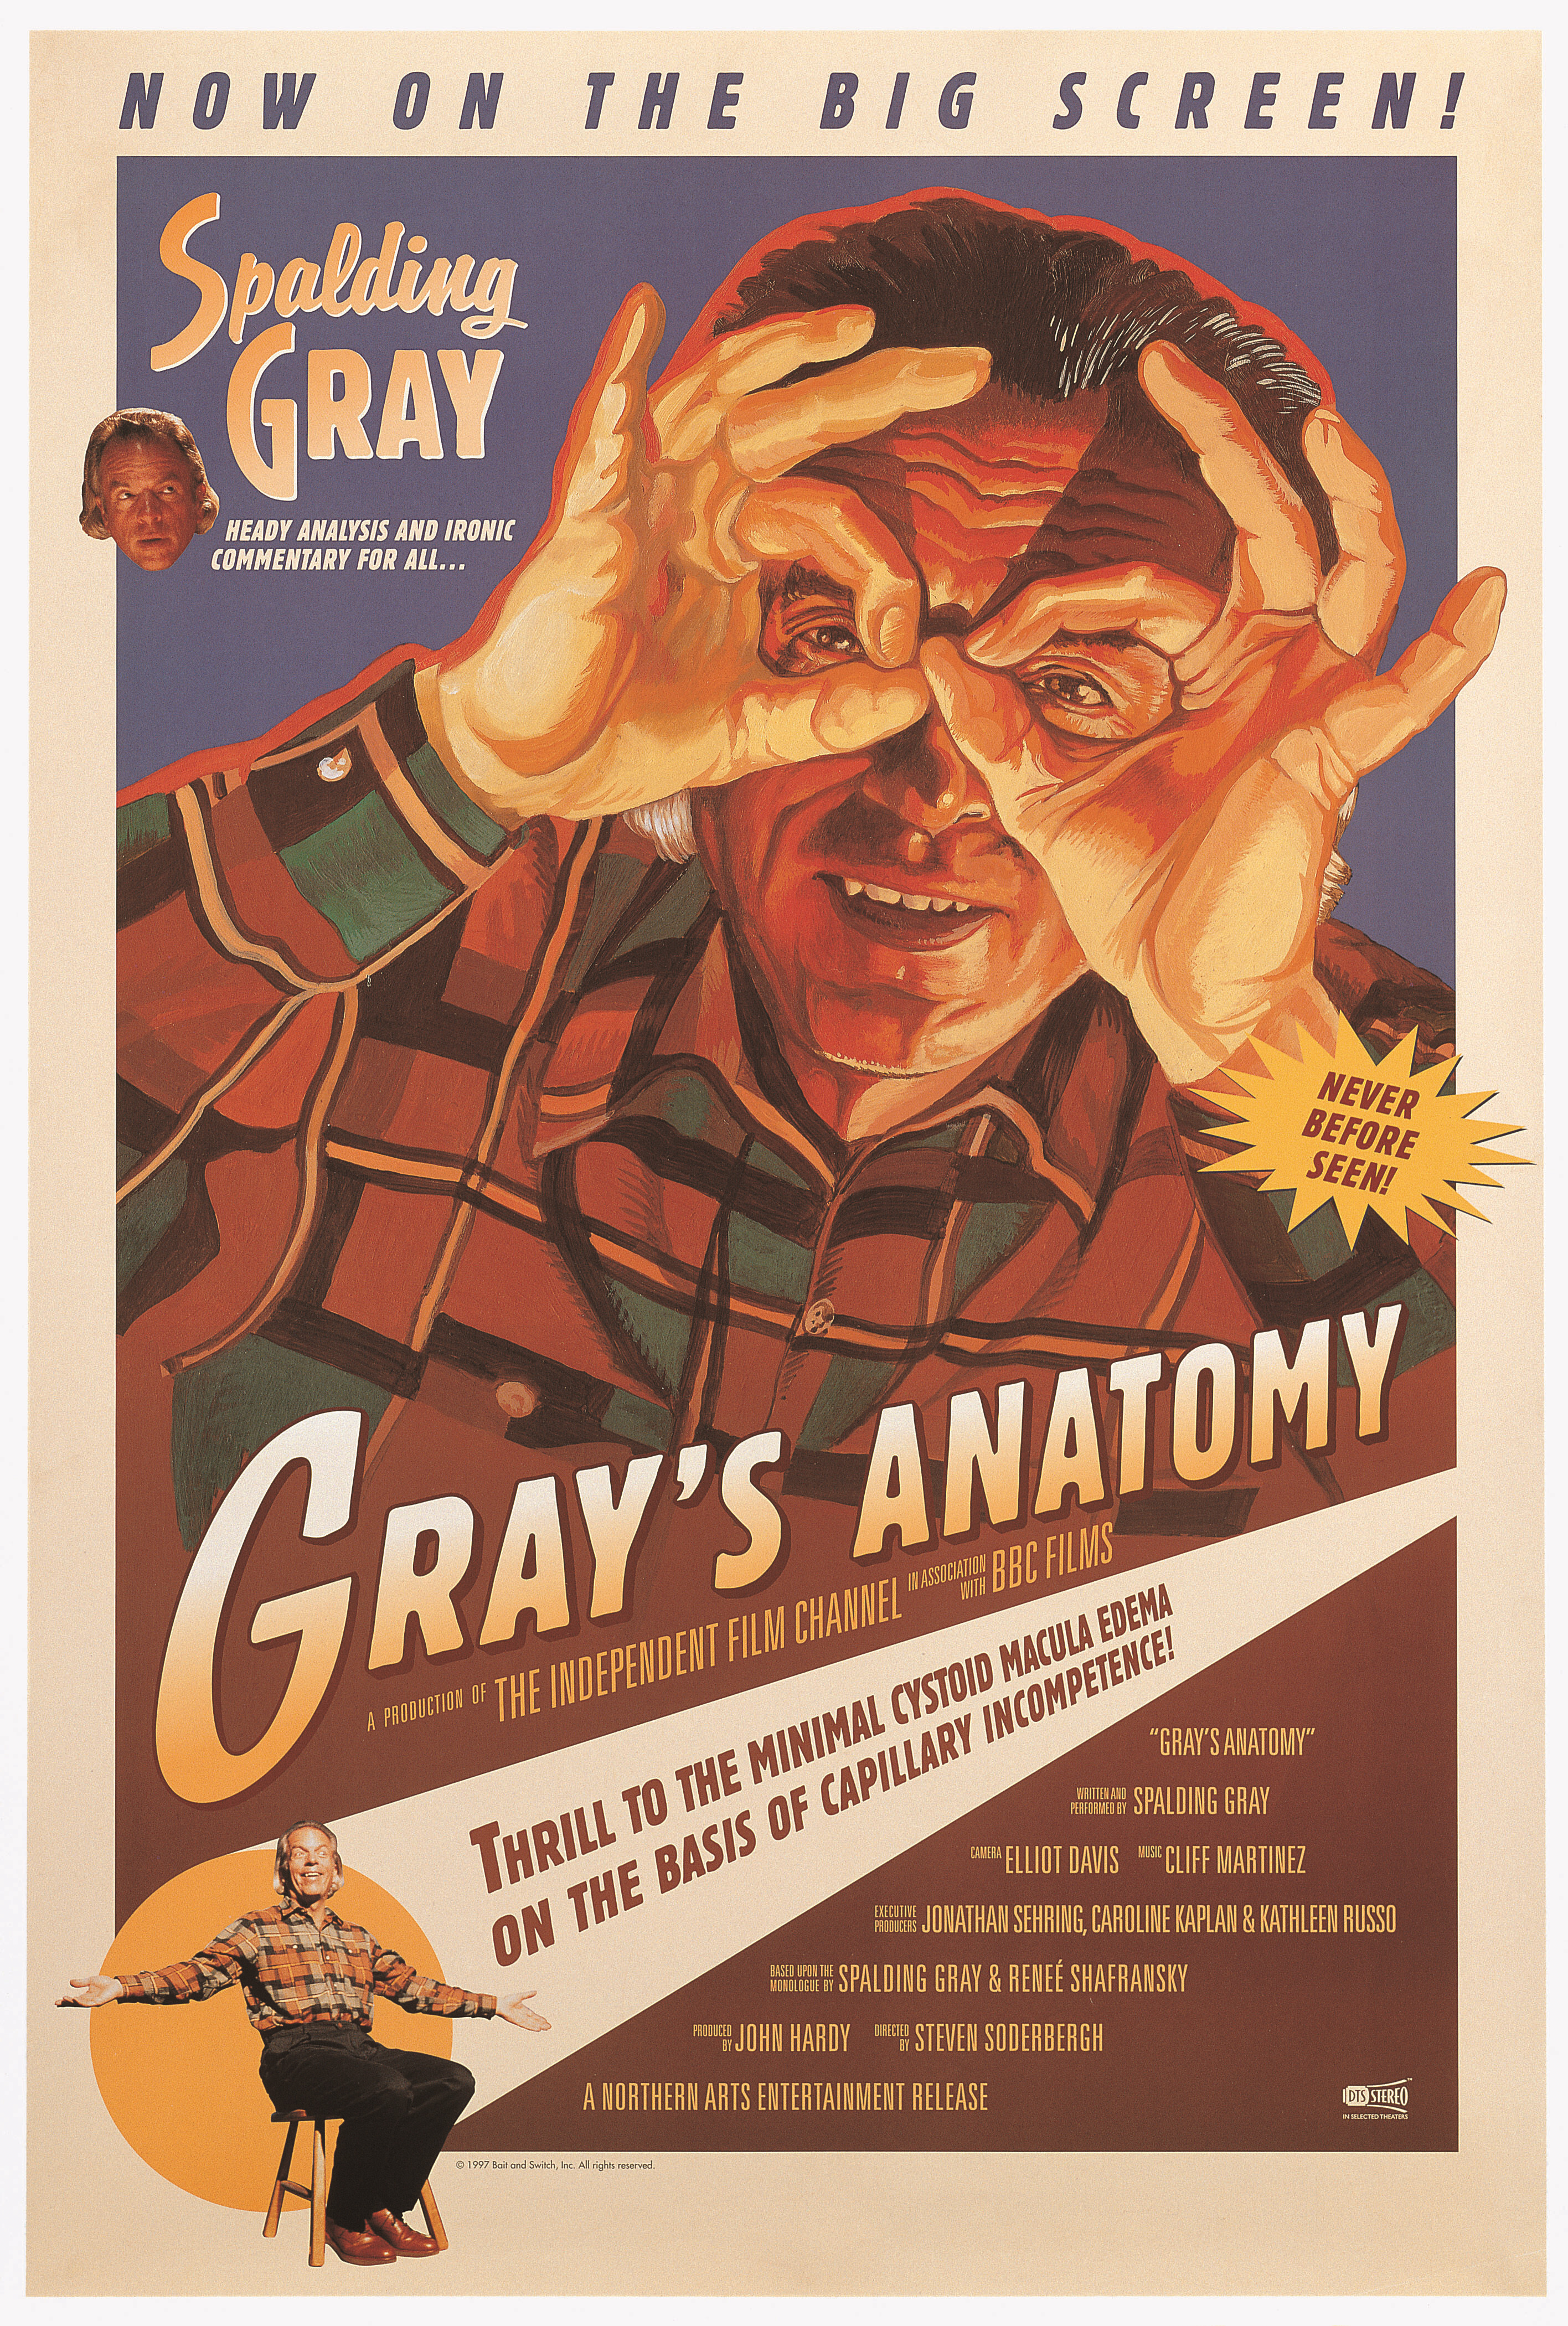 Анатомия Грея (Grays Anatomy, 1996), режиссёр Стивен Содерберг, художественный постер к фильму (США, 1997 год)